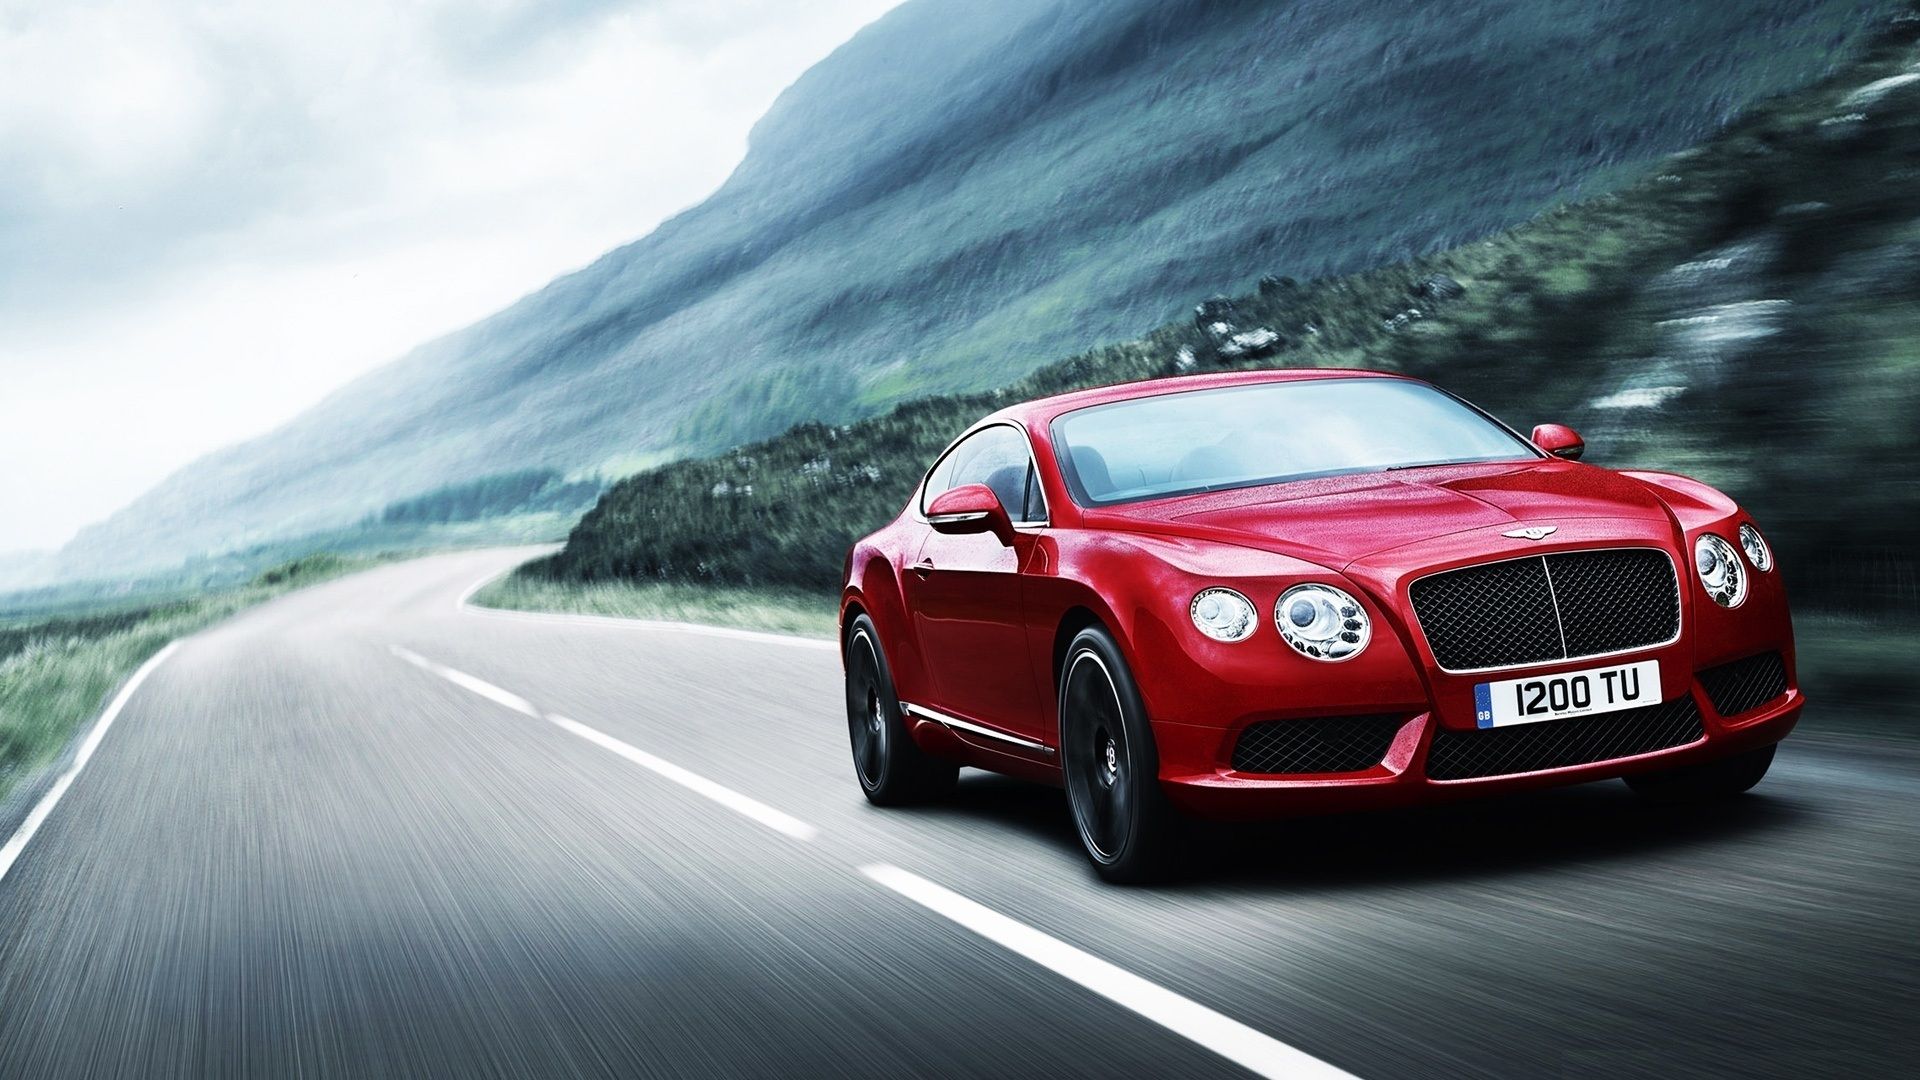 Sự lôi cuốn của xe Red Bentley sẽ đem lại cho bạn cảm giác mạnh mẽ, đẳng cấp, tài ba khi bạn sở hữu ngay cho mình bức hình nền này. Cùng hoài niệm về những chuyến đi đầy phong cách và sang trọng với chiếc siêu xe này!